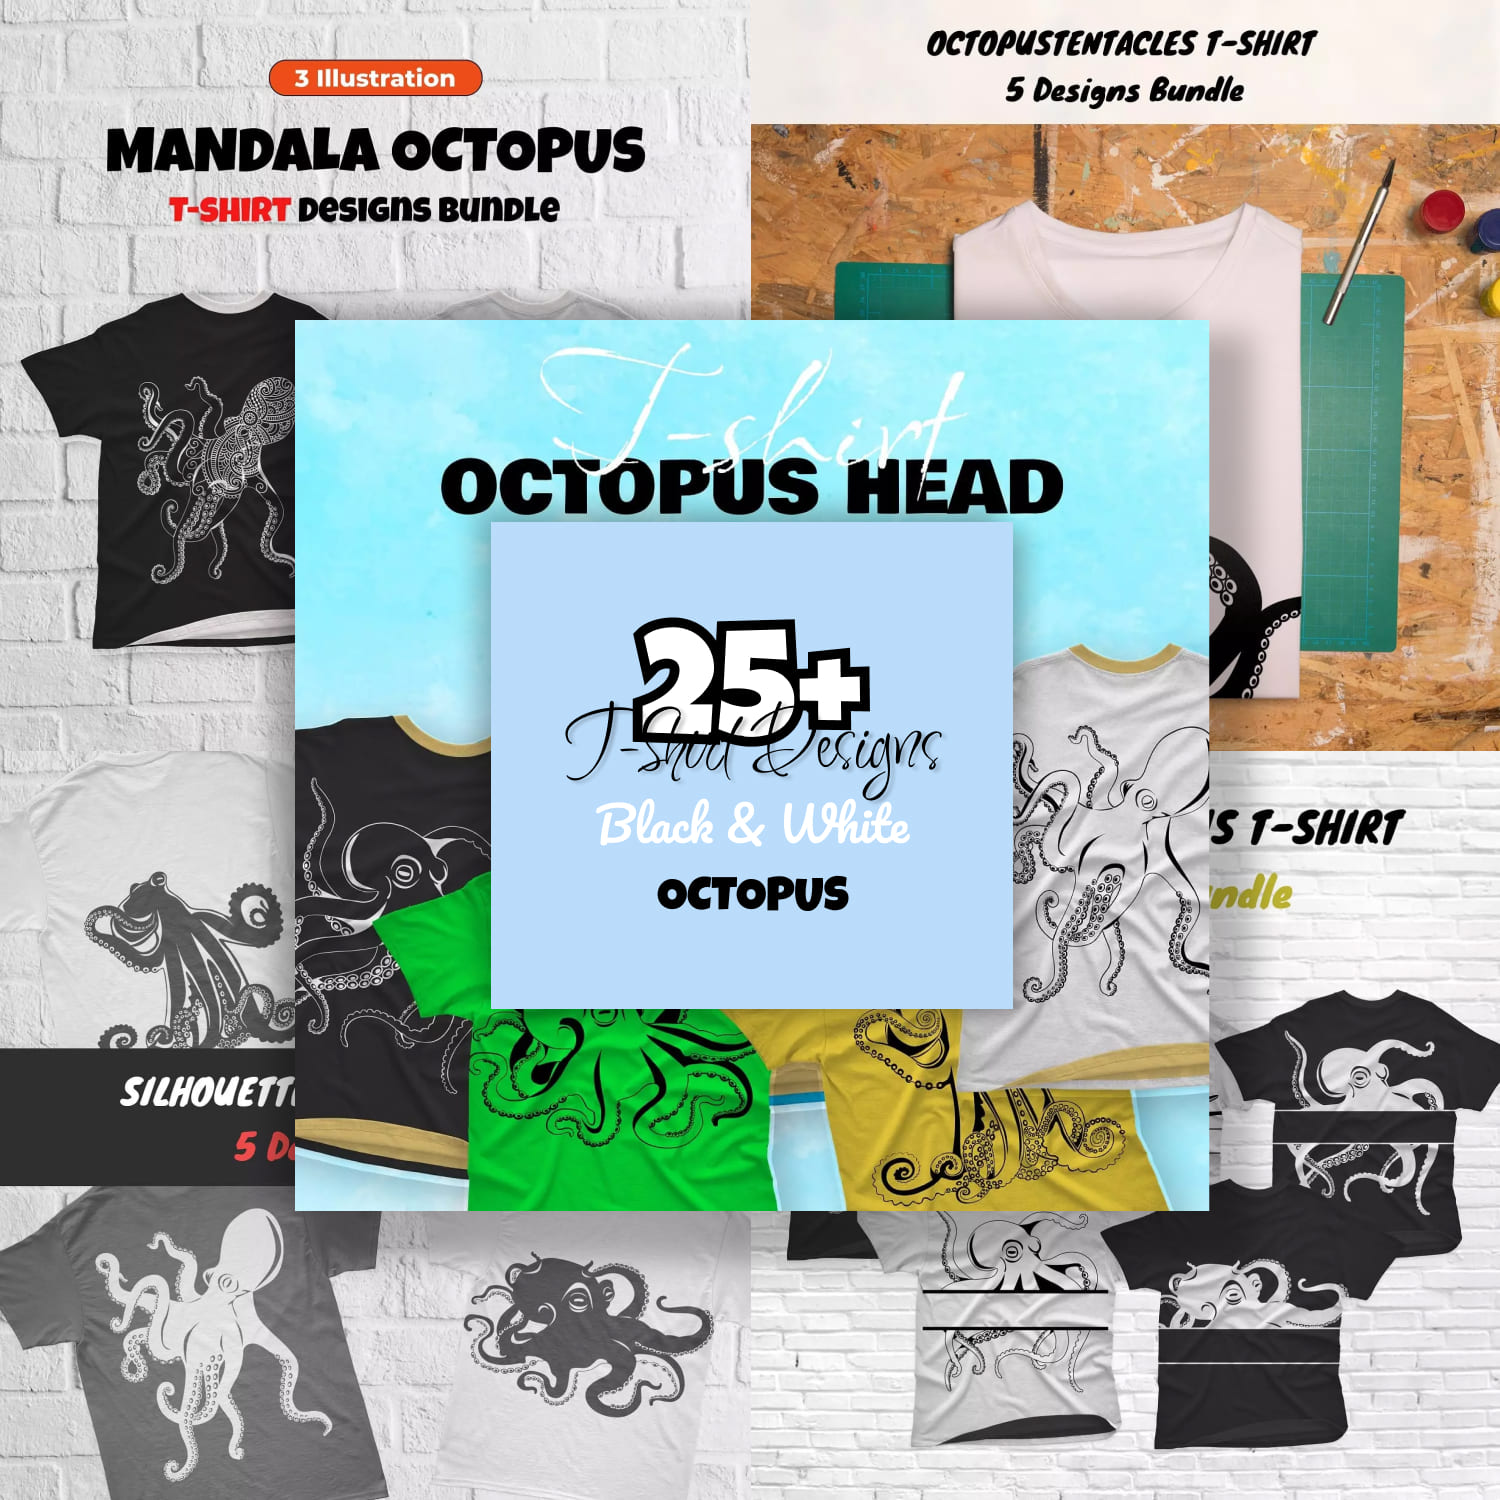 Black & White Оctopus T-shirt Design Images Bundle.